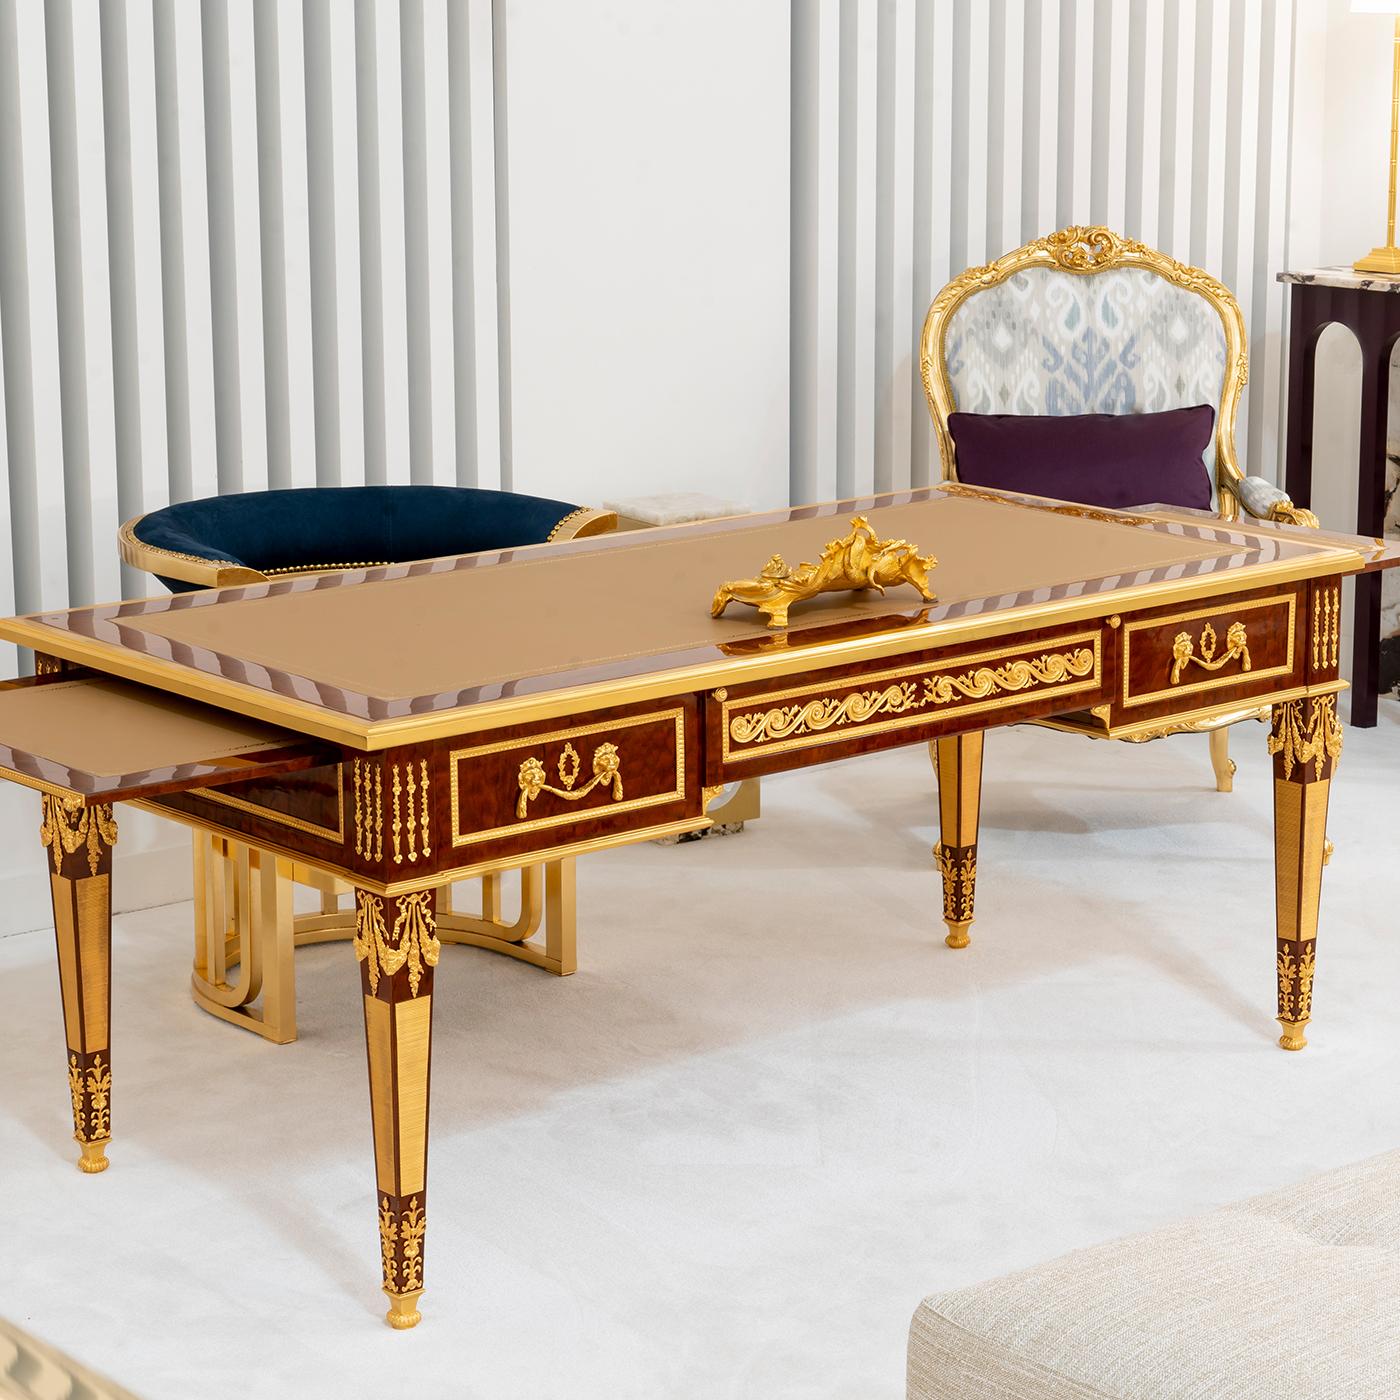 Dieser exklusive Schreibtisch im Louis XVI-Stil ist von außergewöhnlicher Raffinesse und verleiht einem anspruchsvollen Interieur eine luxuriöse Ausstrahlung. Er ist aus Pomele-Mahagoni handgefertigt und mit Bronzedekorationen versehen, die mit 24